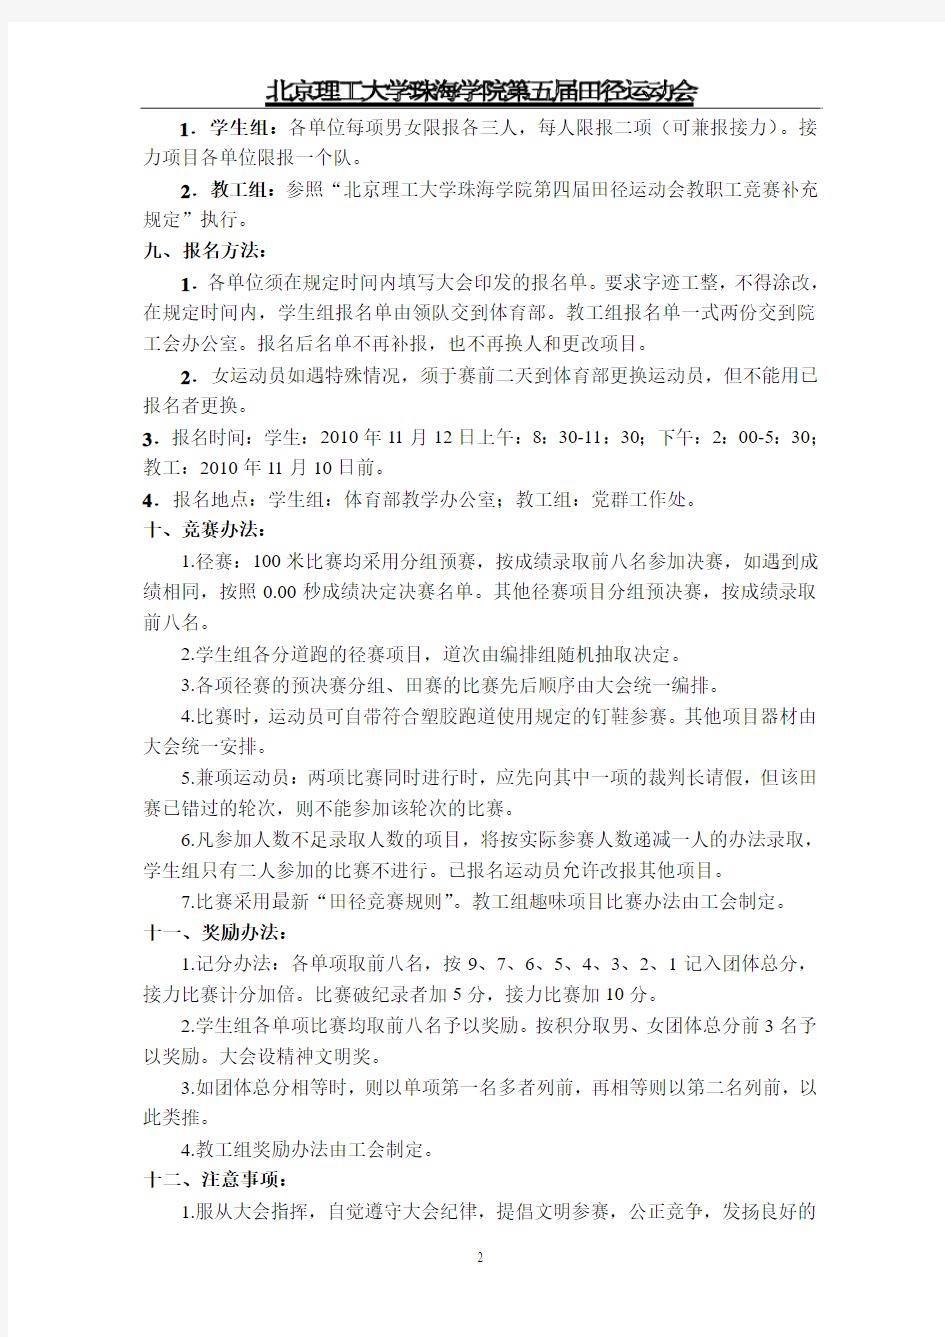 北京理工大学珠海学院第三届田径运动会竞赛规程